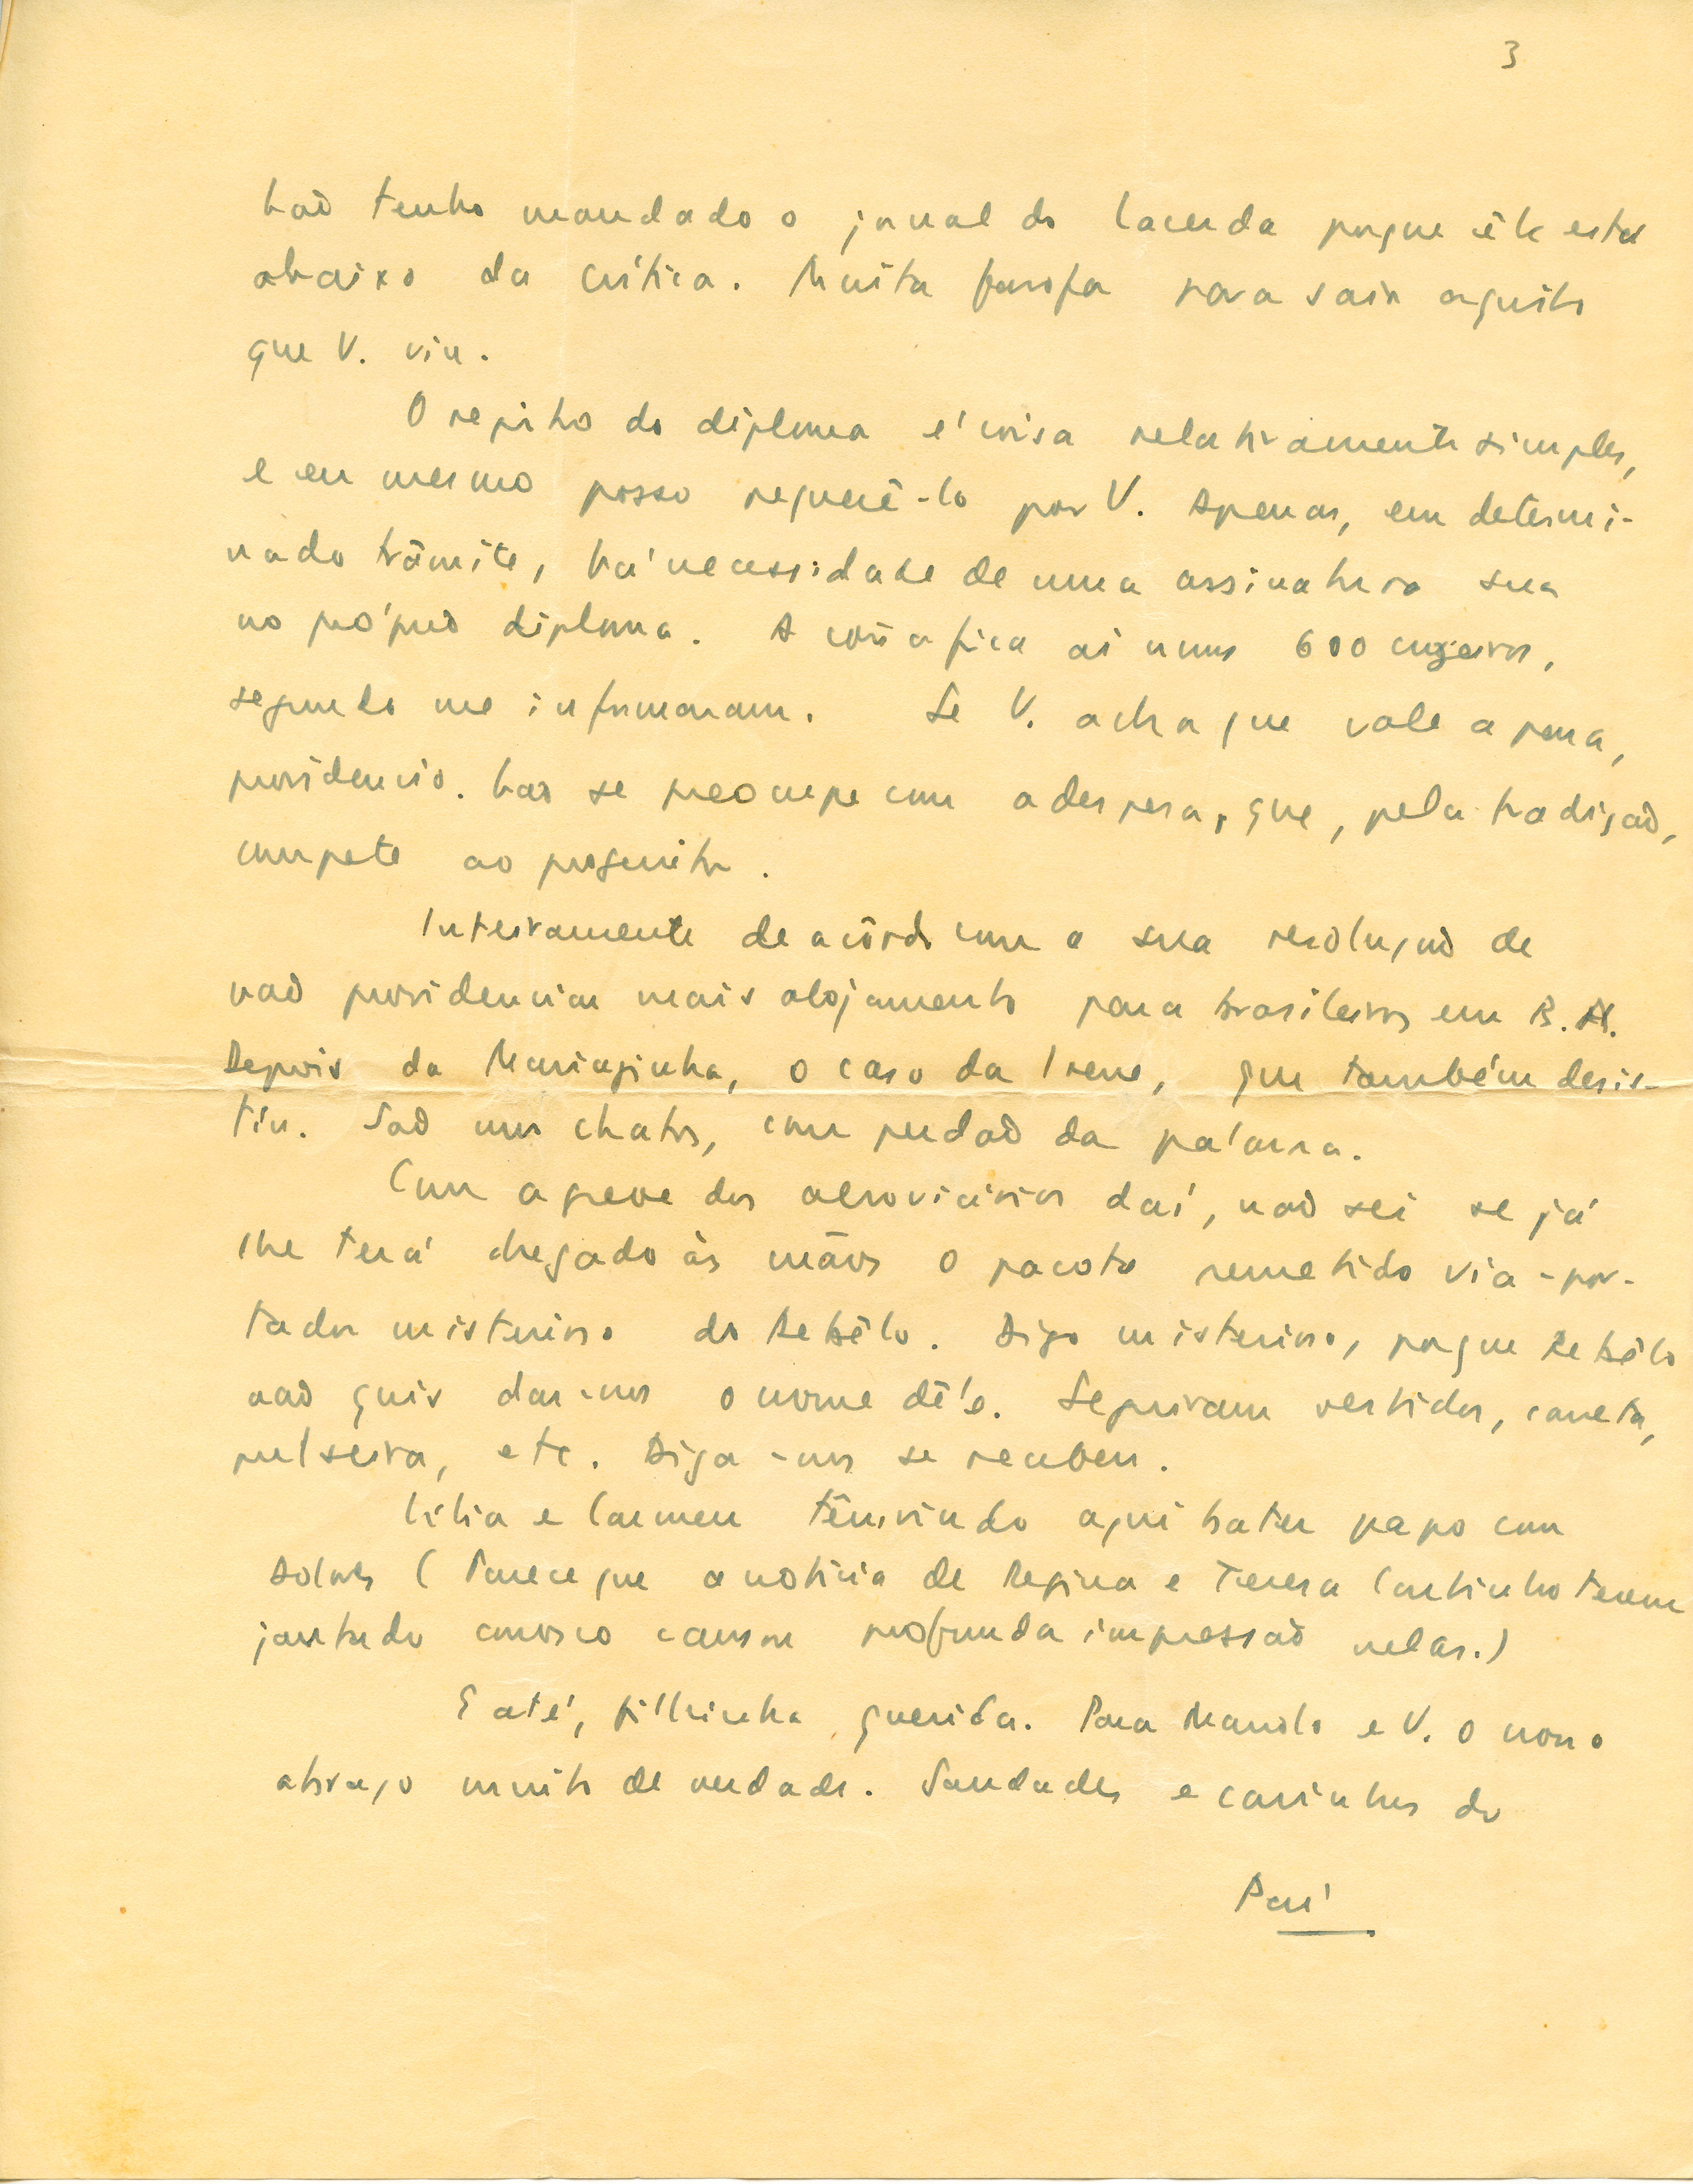 Carta de Carlos Drummond de Andrade a Maria Julieta Drummond de Andrade. Arquivo pessoal Pedro Augusto Graña Drummond